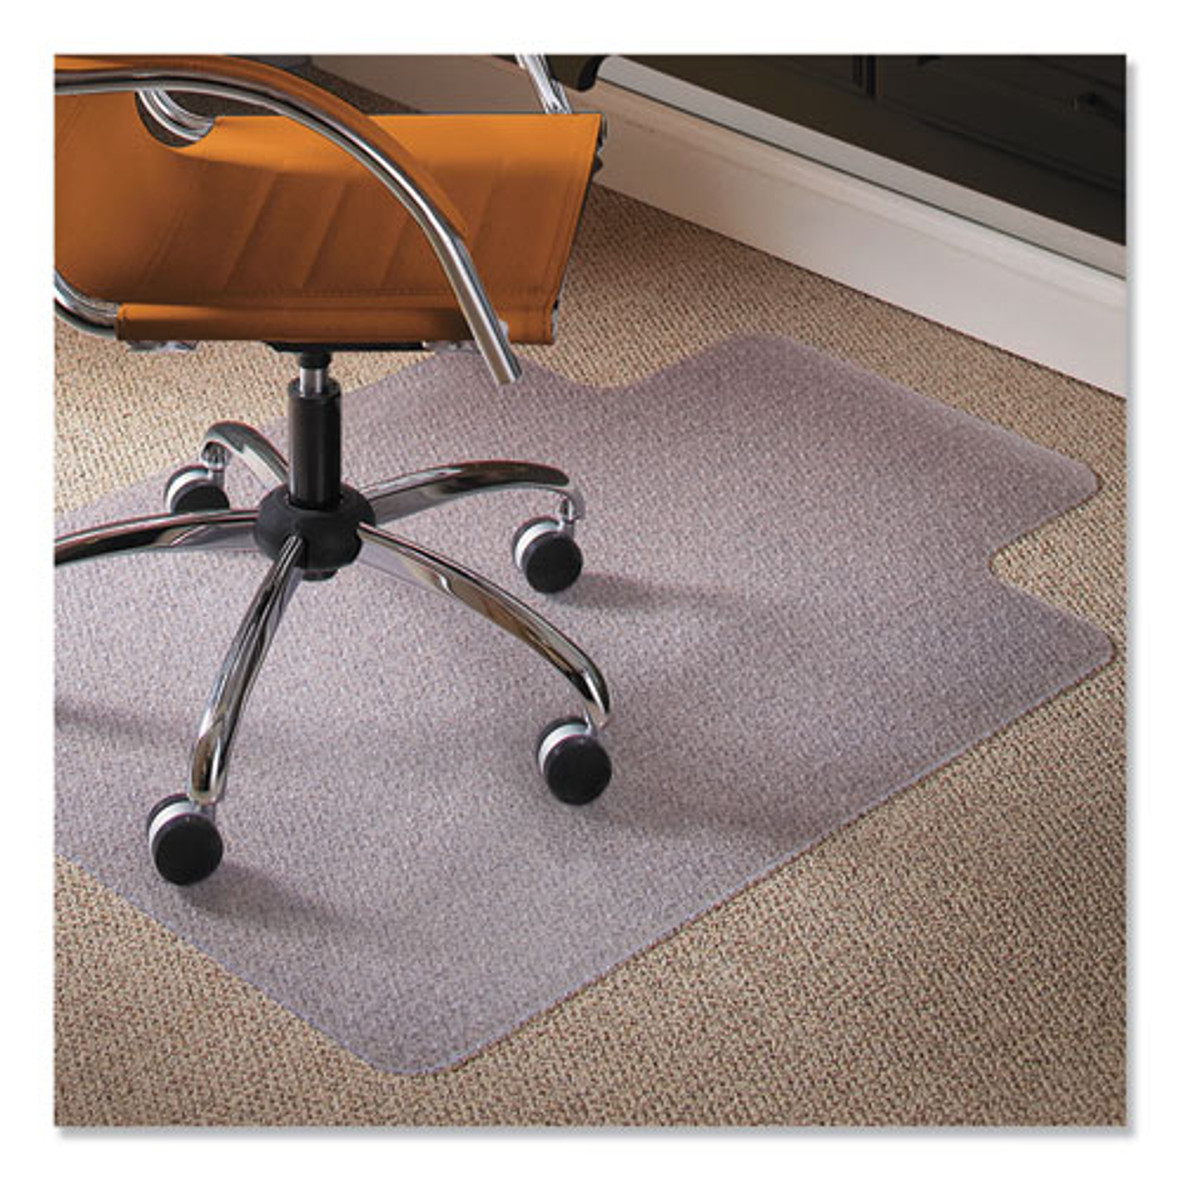 ES Robbins® Natural Origins Chair Mat with Lip For Carpet, 45 x 53, Clear, 1 Each/Carton